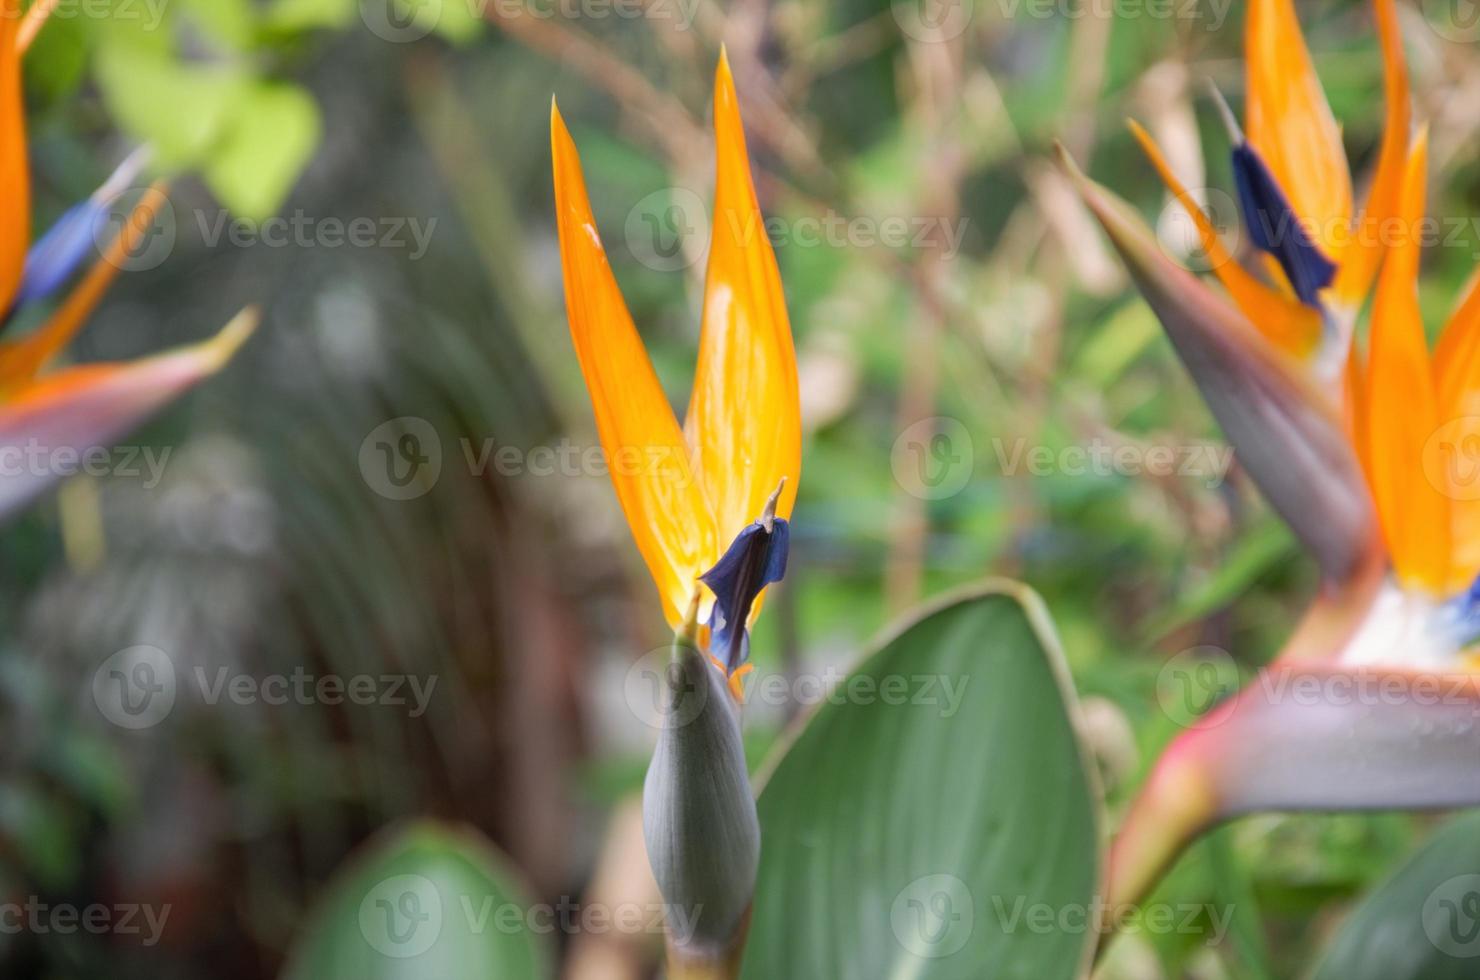 strelitzia è una pianta erbacea perenne bella insolita. interessante fiore d'arancio come uccello del paradiso foto